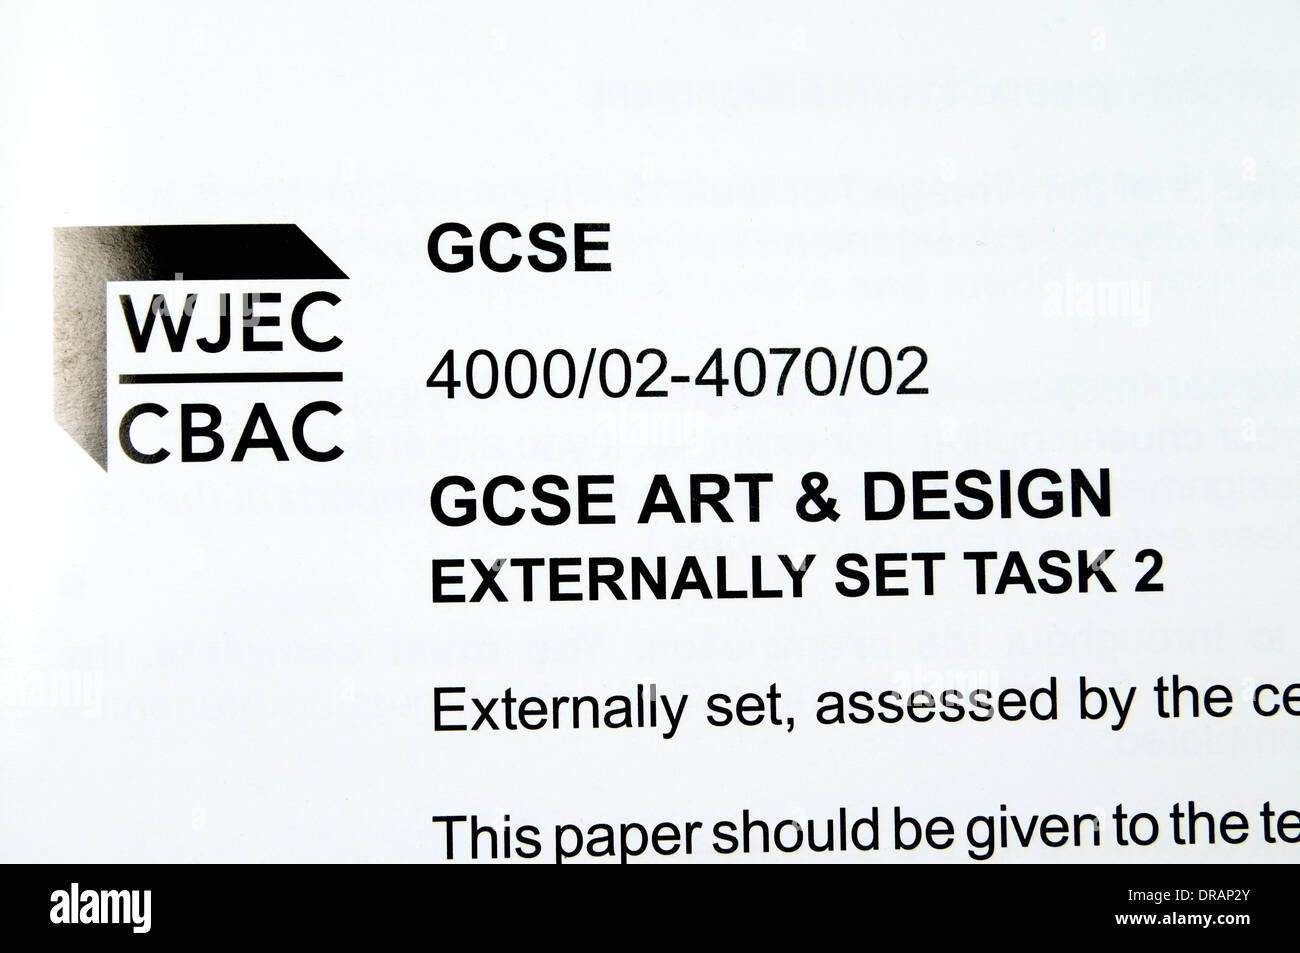 Arte y Diseño WJEC GCSE hoja de información tarea externa Foto de stock